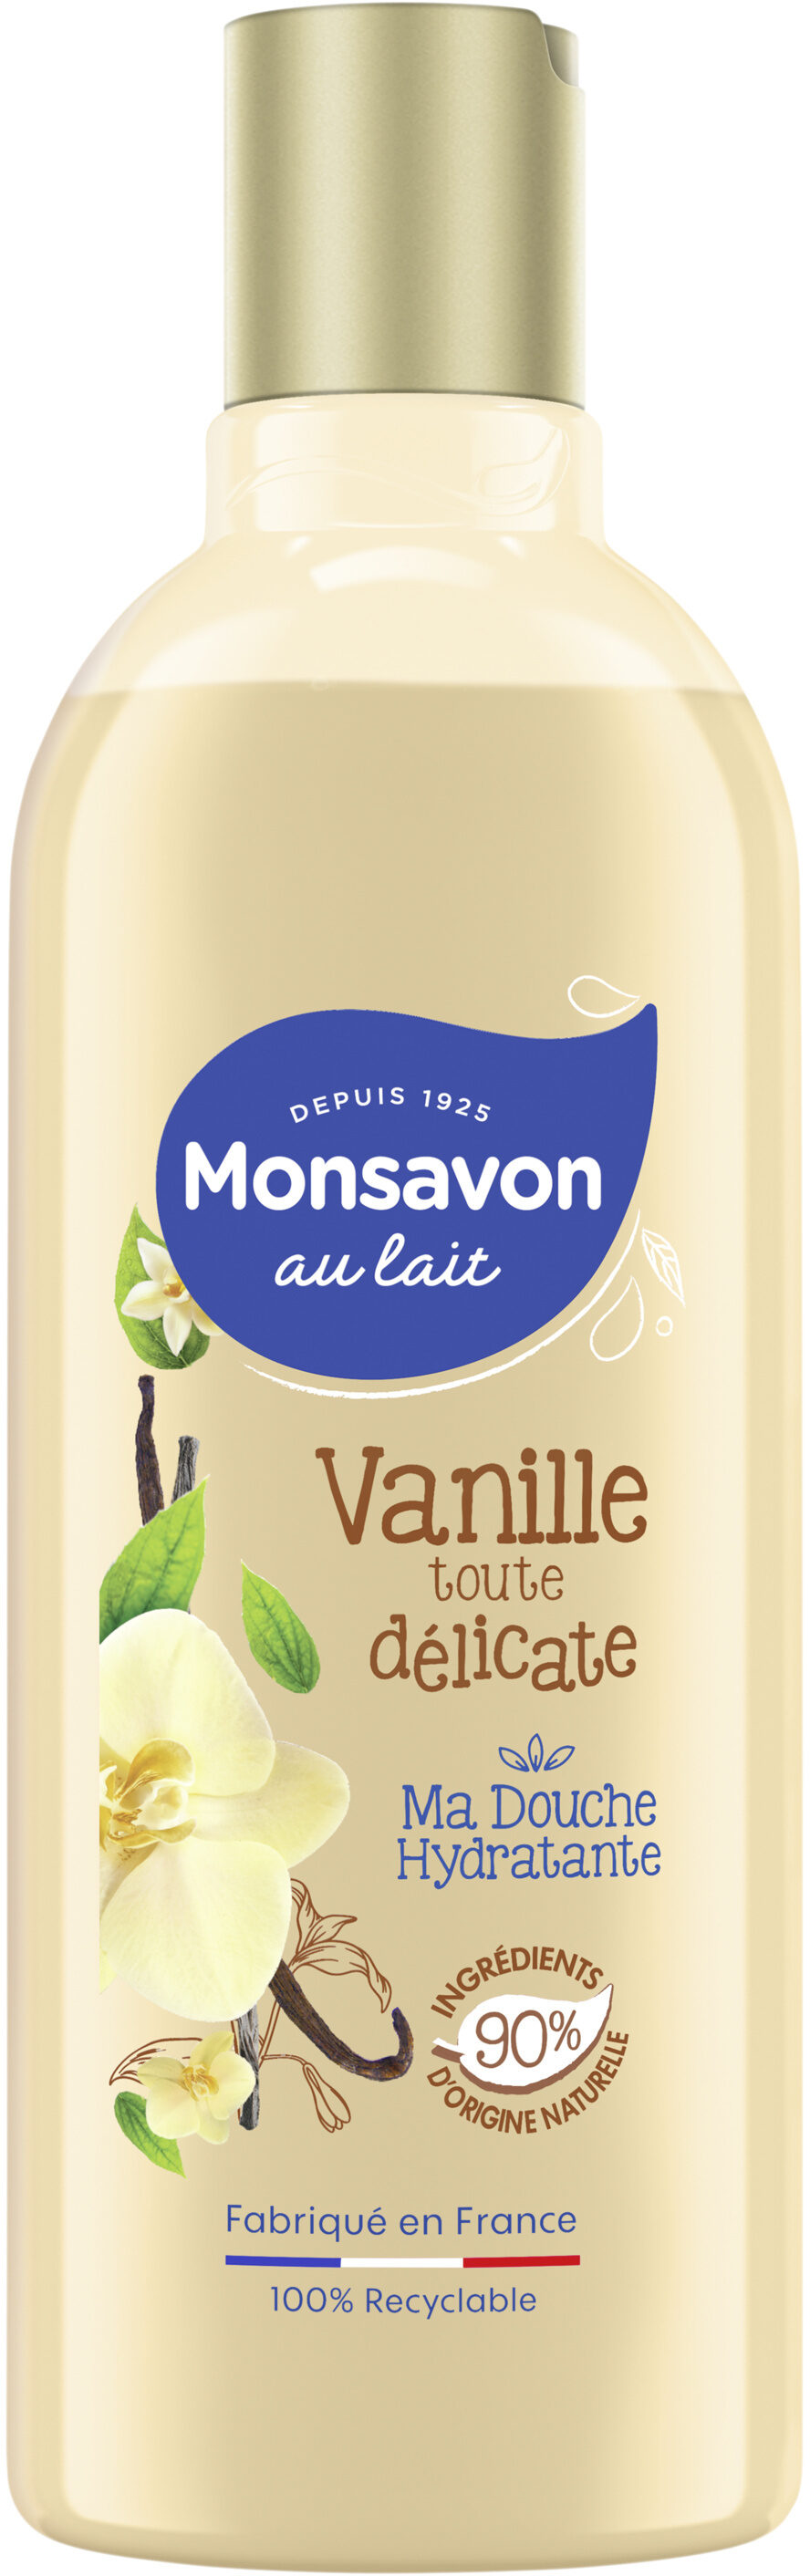 Monsavon Gel Douche Vanille Toute Délicate 300ml - Product - fr